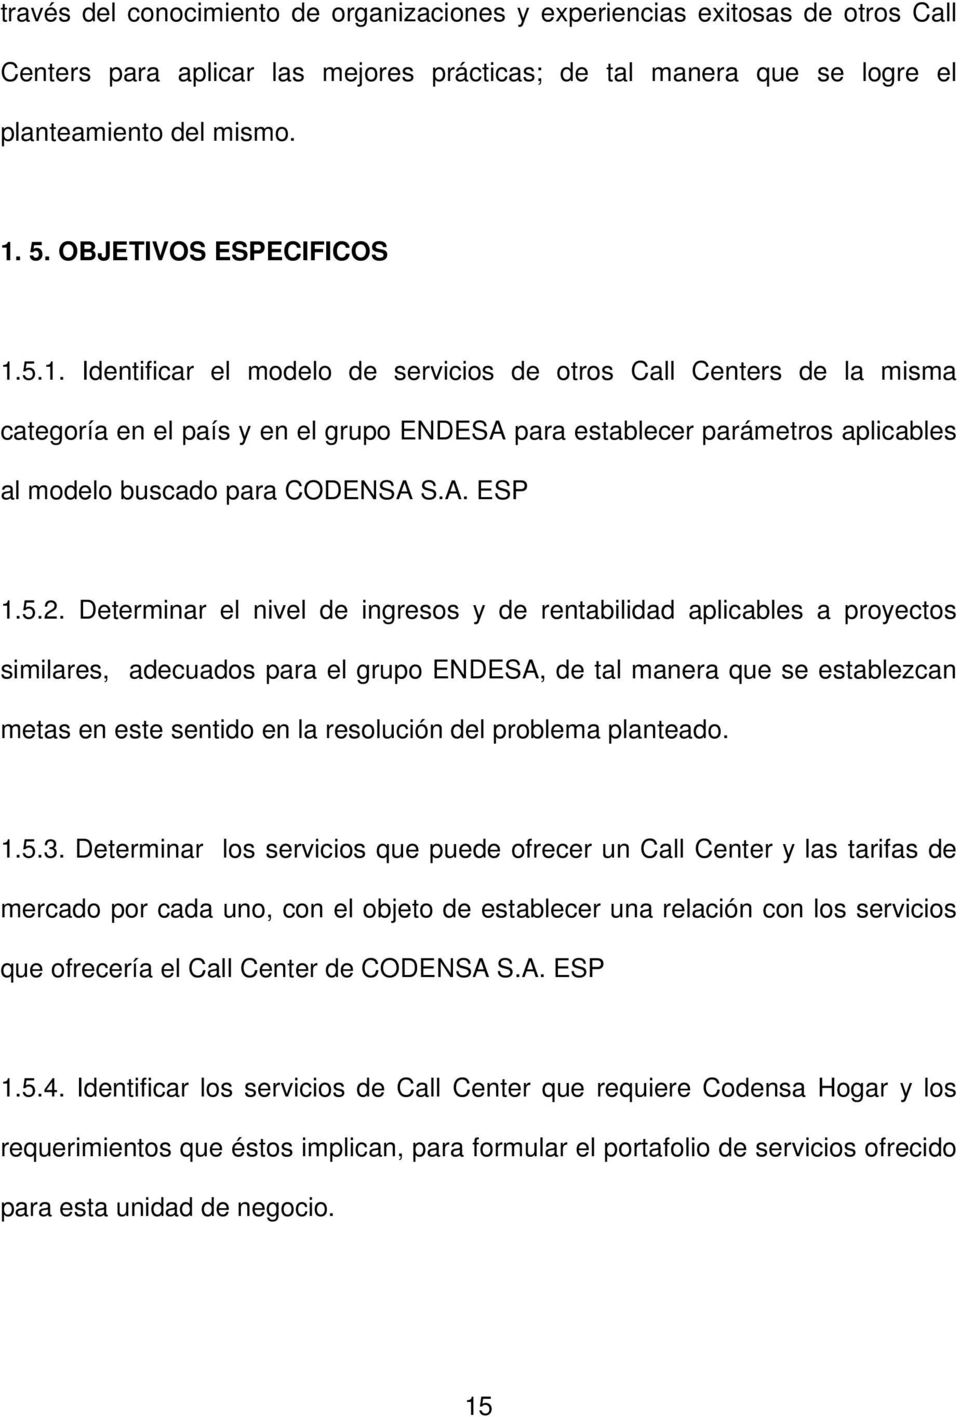 5.1. Identificar el modelo de servicios de otros Call Centers de la misma categoría en el país y en el grupo ENDESA para establecer parámetros aplicables al modelo buscado para CODENSA S.A. ESP 1.5.2.